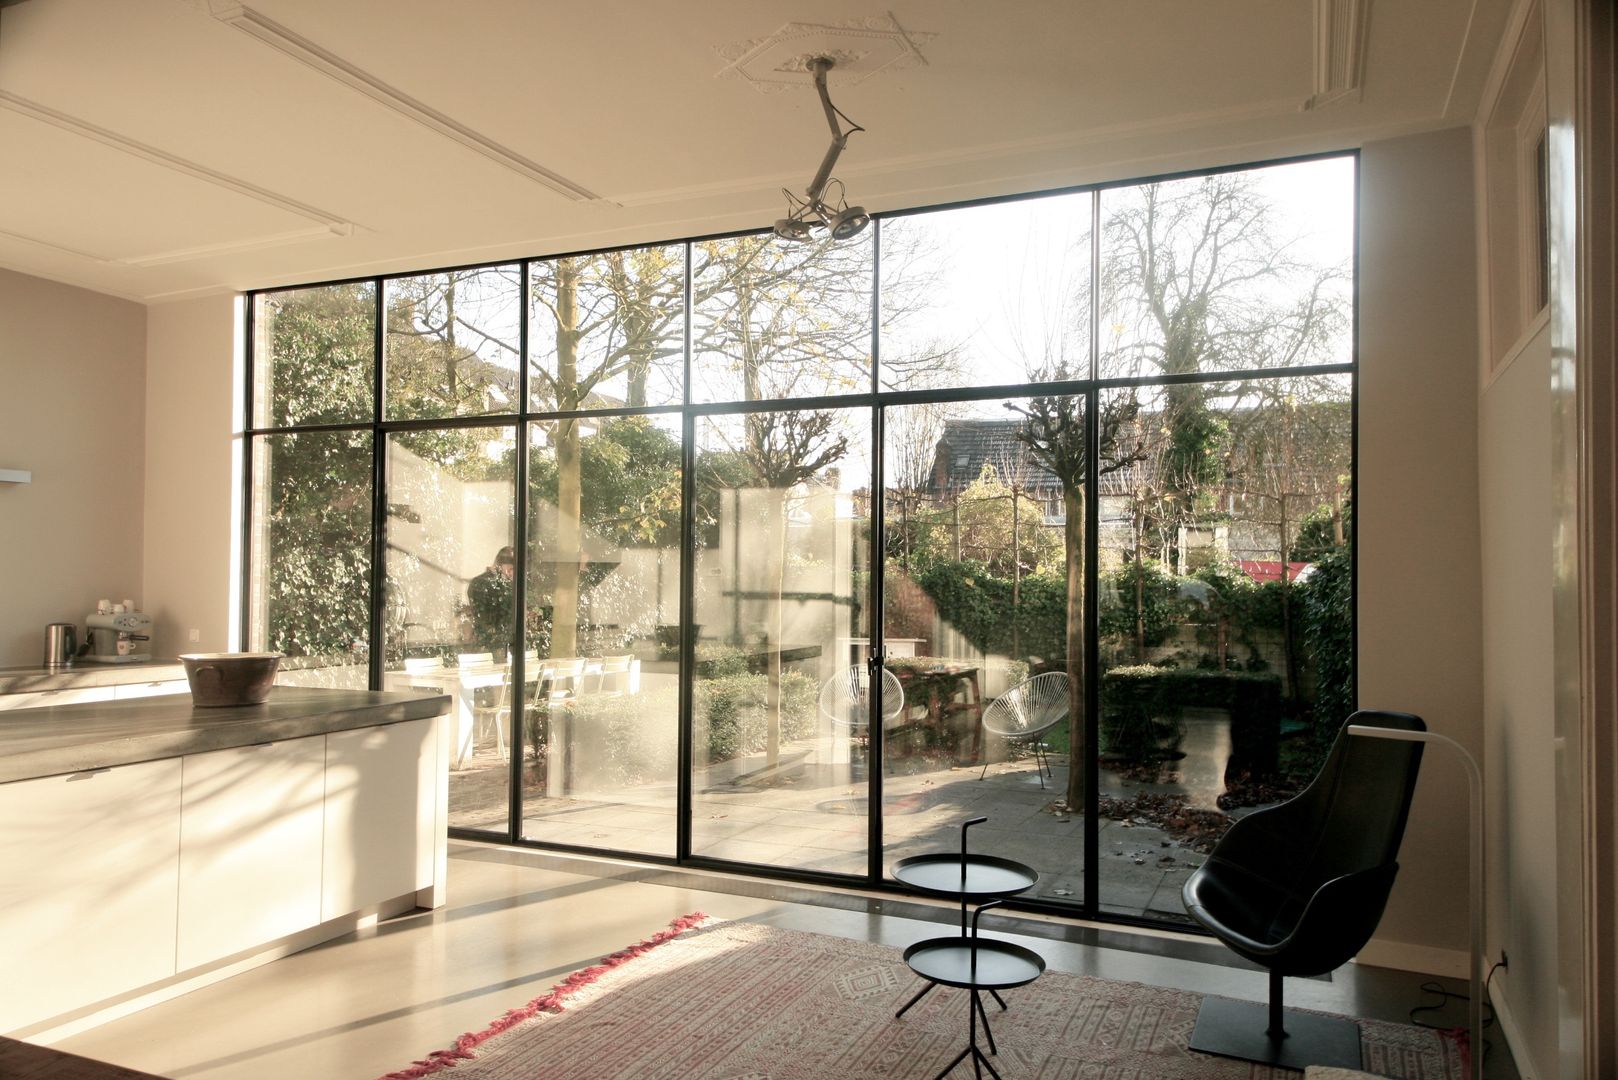 Neem een kijkje in een modern huis in Breda, ddp-architectuur ddp-architectuur Comedores Metal